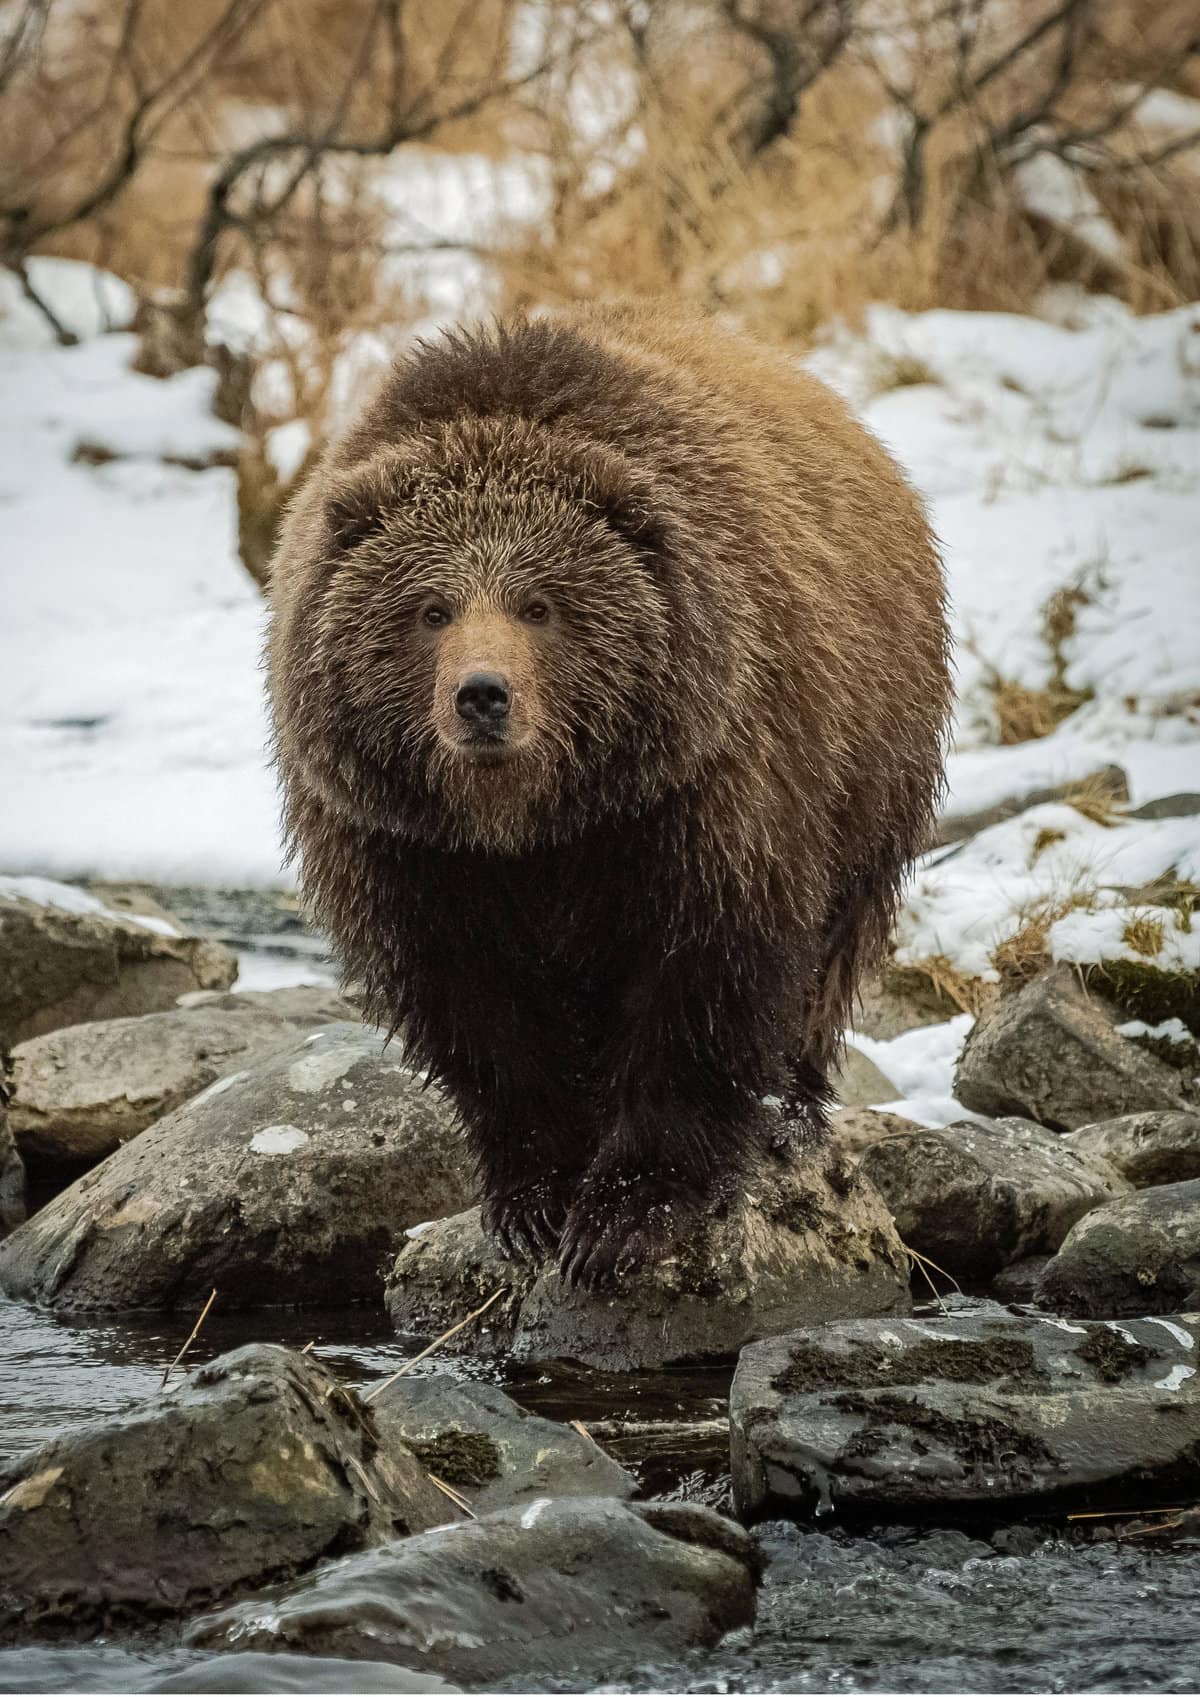 A Kodiak bear